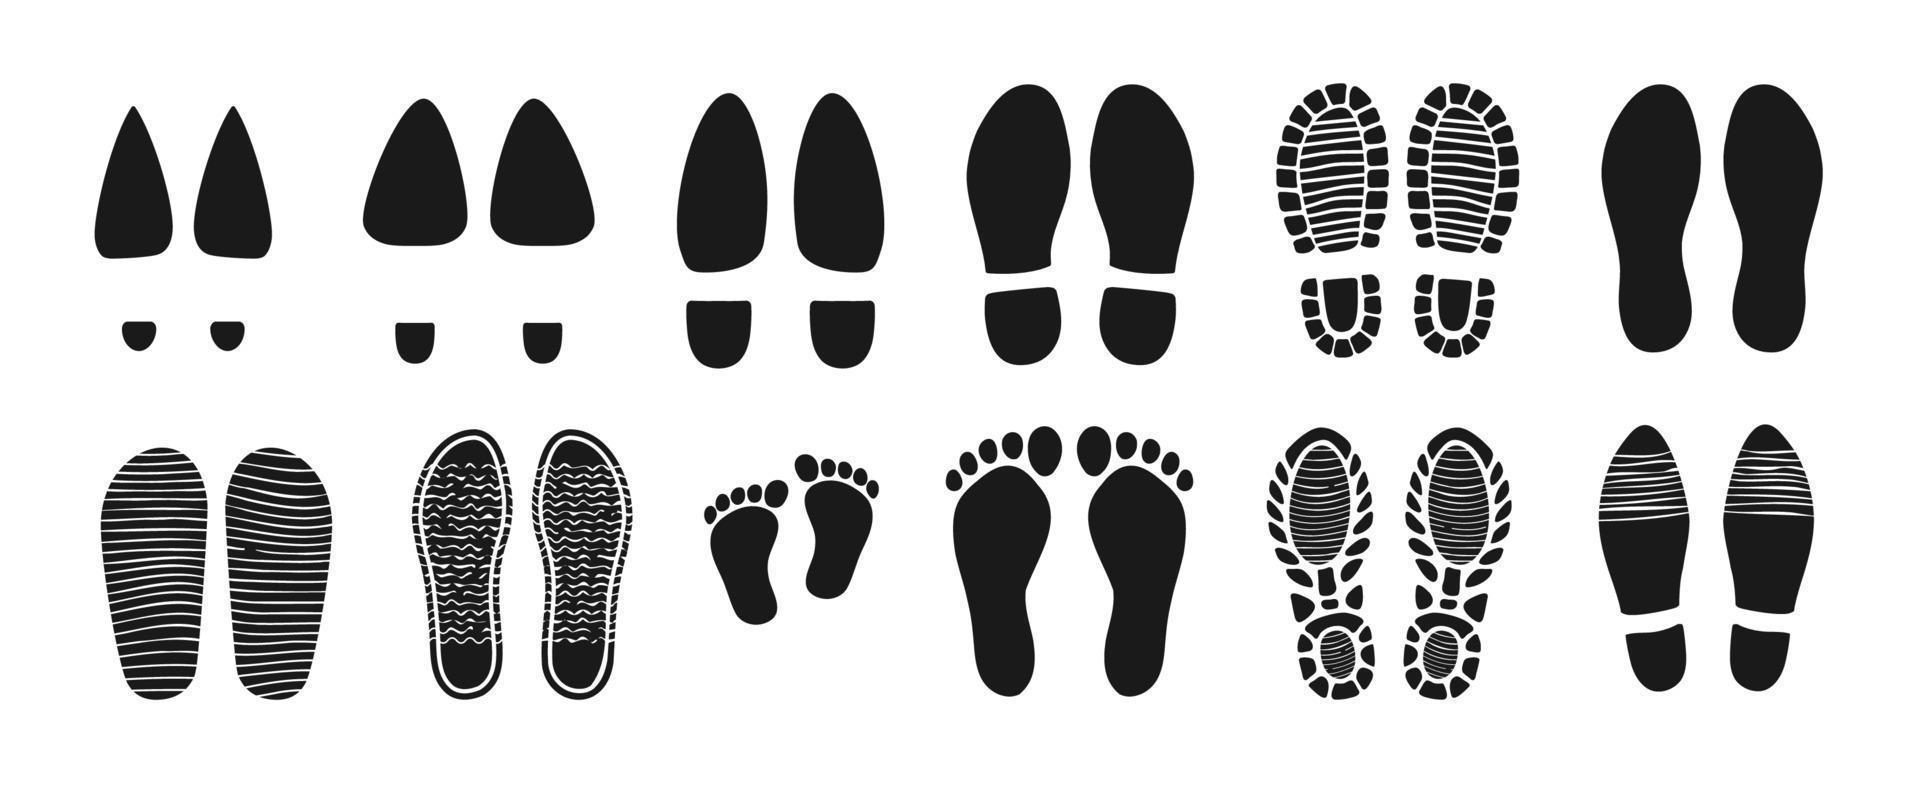 man och kvinna skor, bebis barfota fotspår vektor